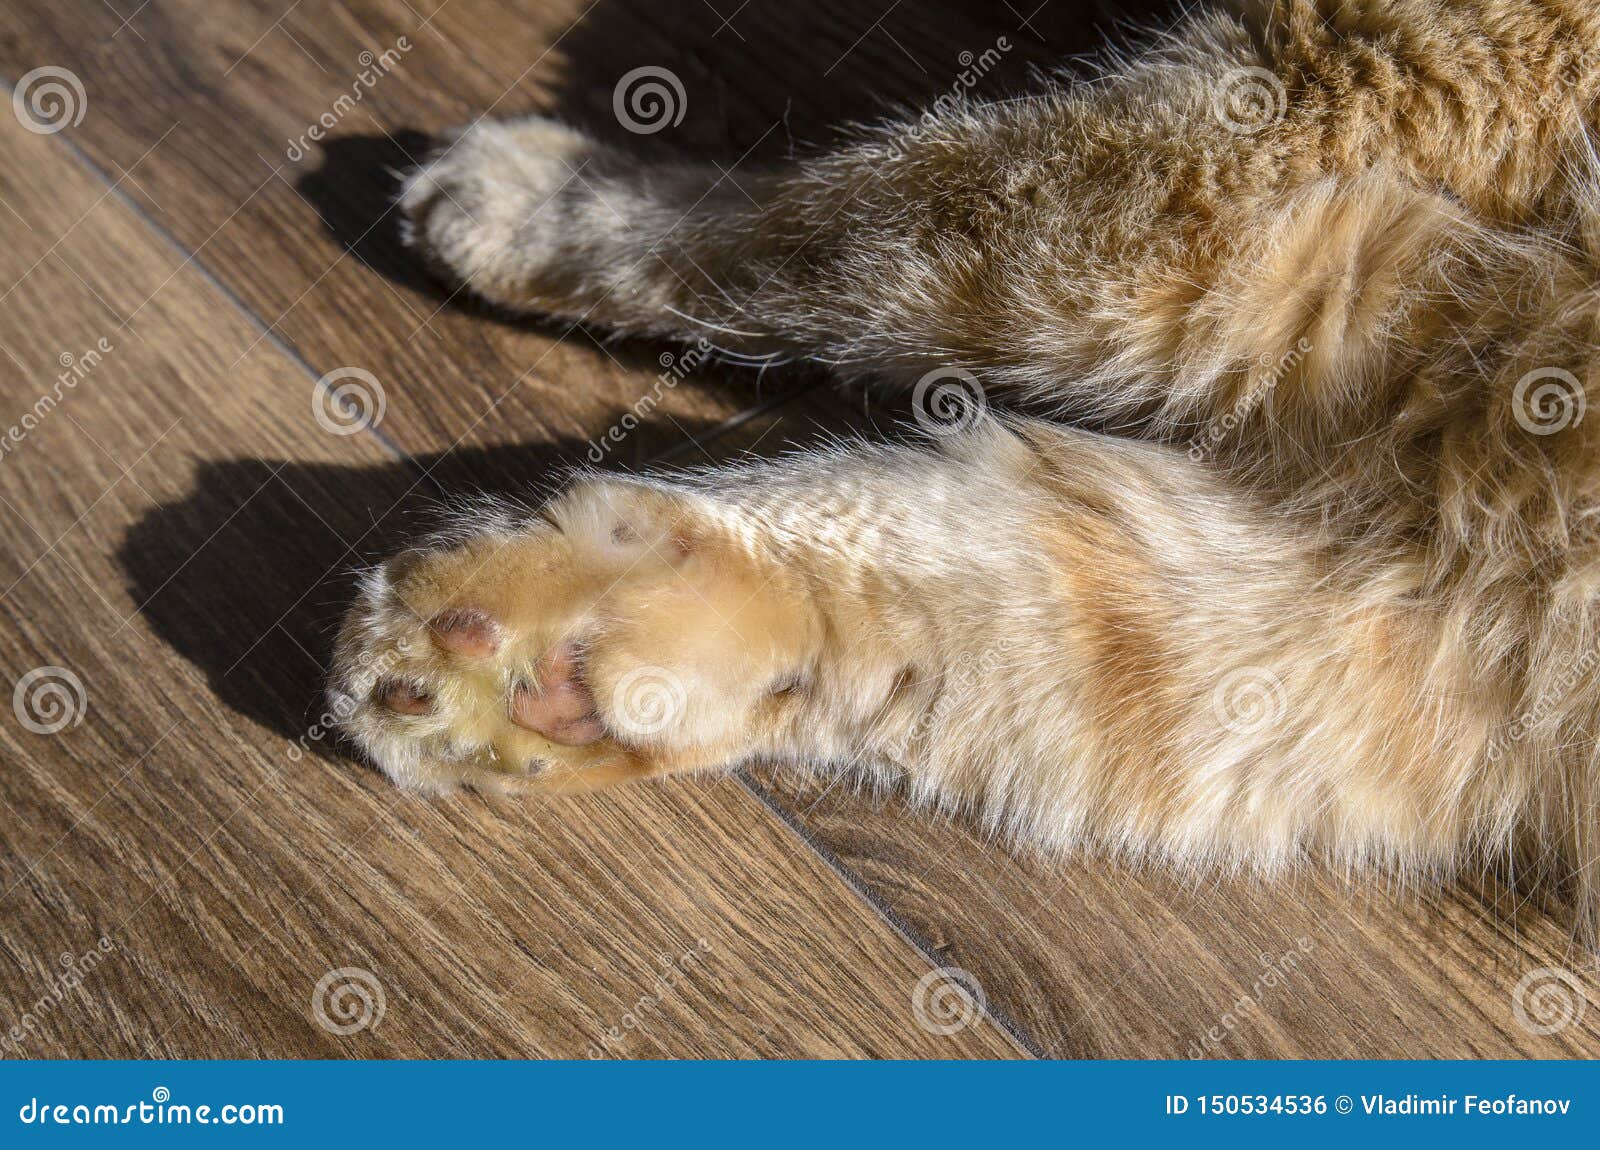 kitten swollen paw